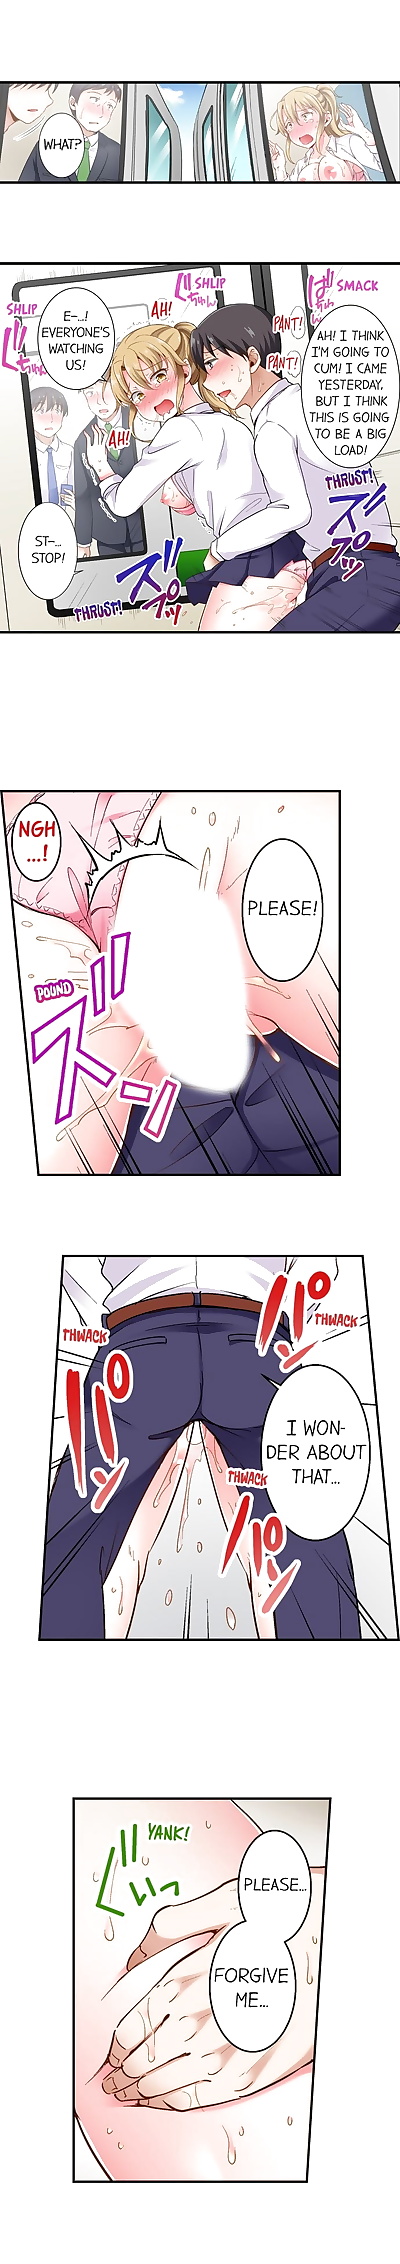 ภาษาอังกฤษ manga คน lvl 99 ดิ๊ก - ส่วนหนึ่ง 2, big breasts , full color 